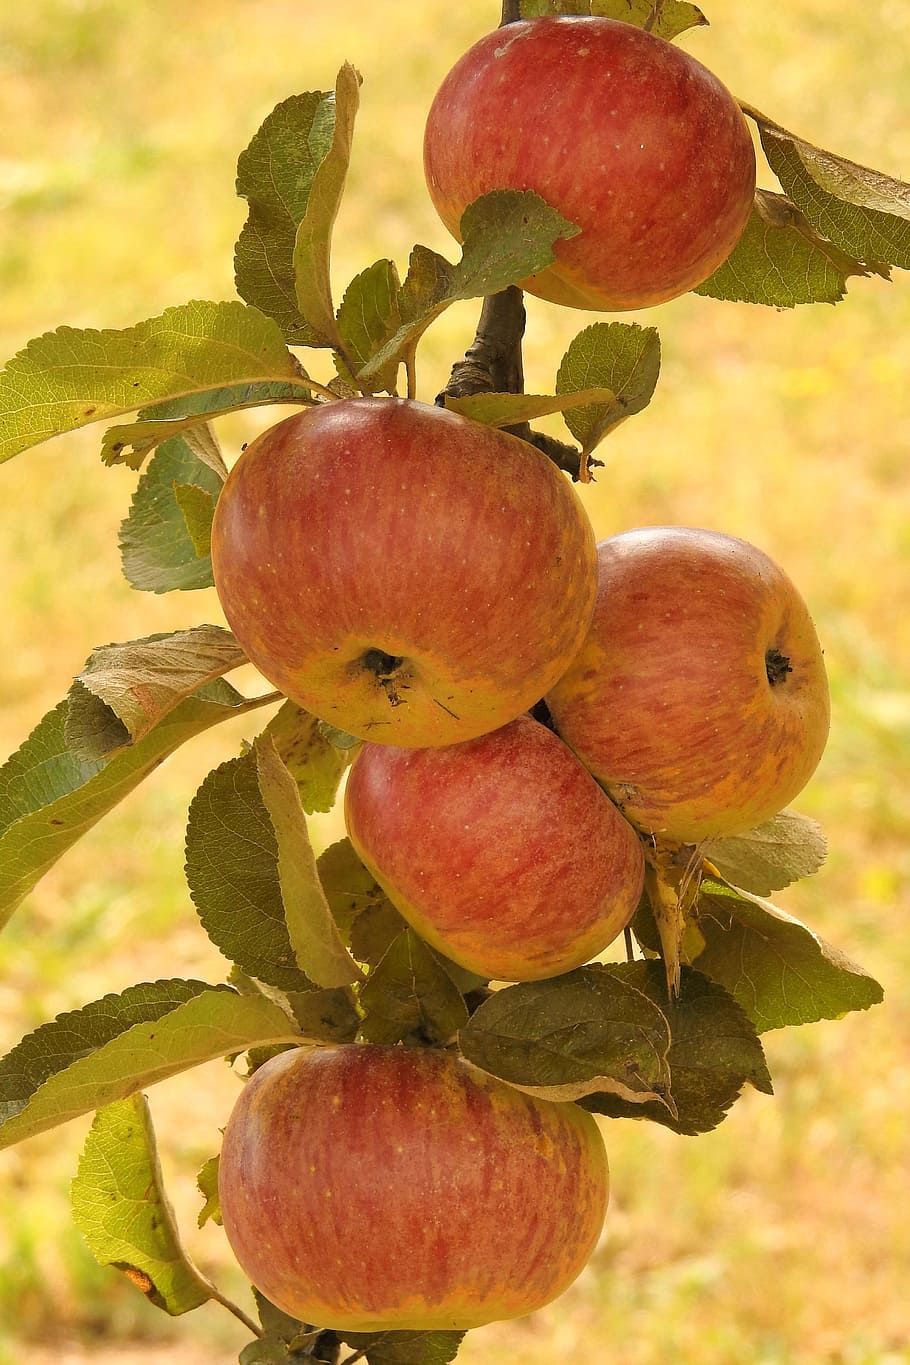 사과, 사과 나무, 분기, 익은, kernobstgewaechs, 과일, 건강한 식생활, 음식, 음식 및 음료, 신선도